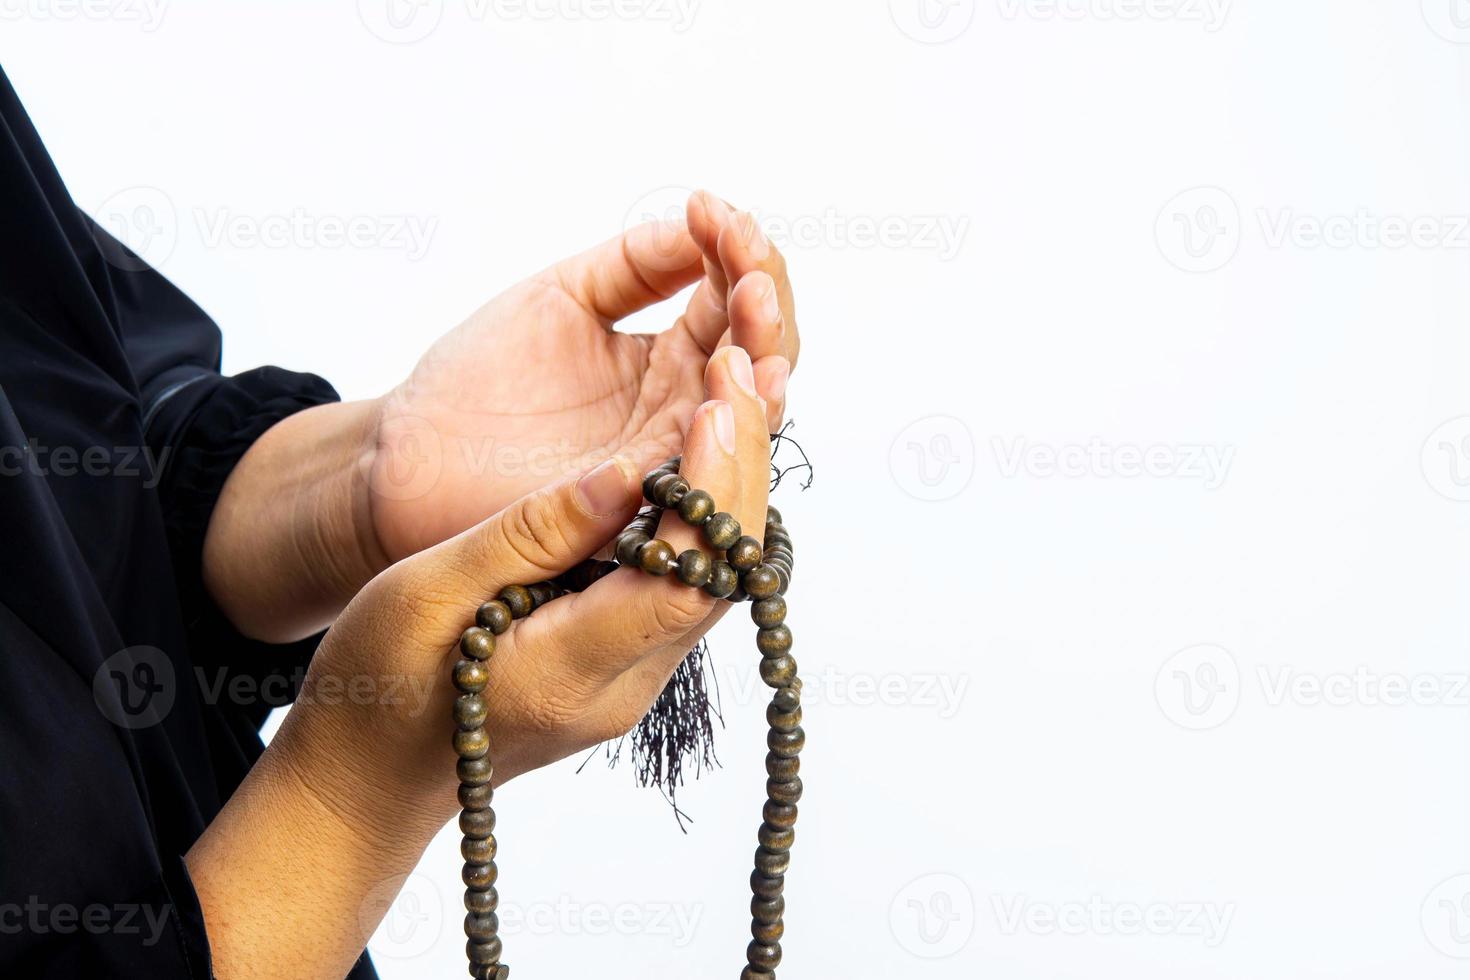 mujer musulmana rezando por allah, dios musulmán foto